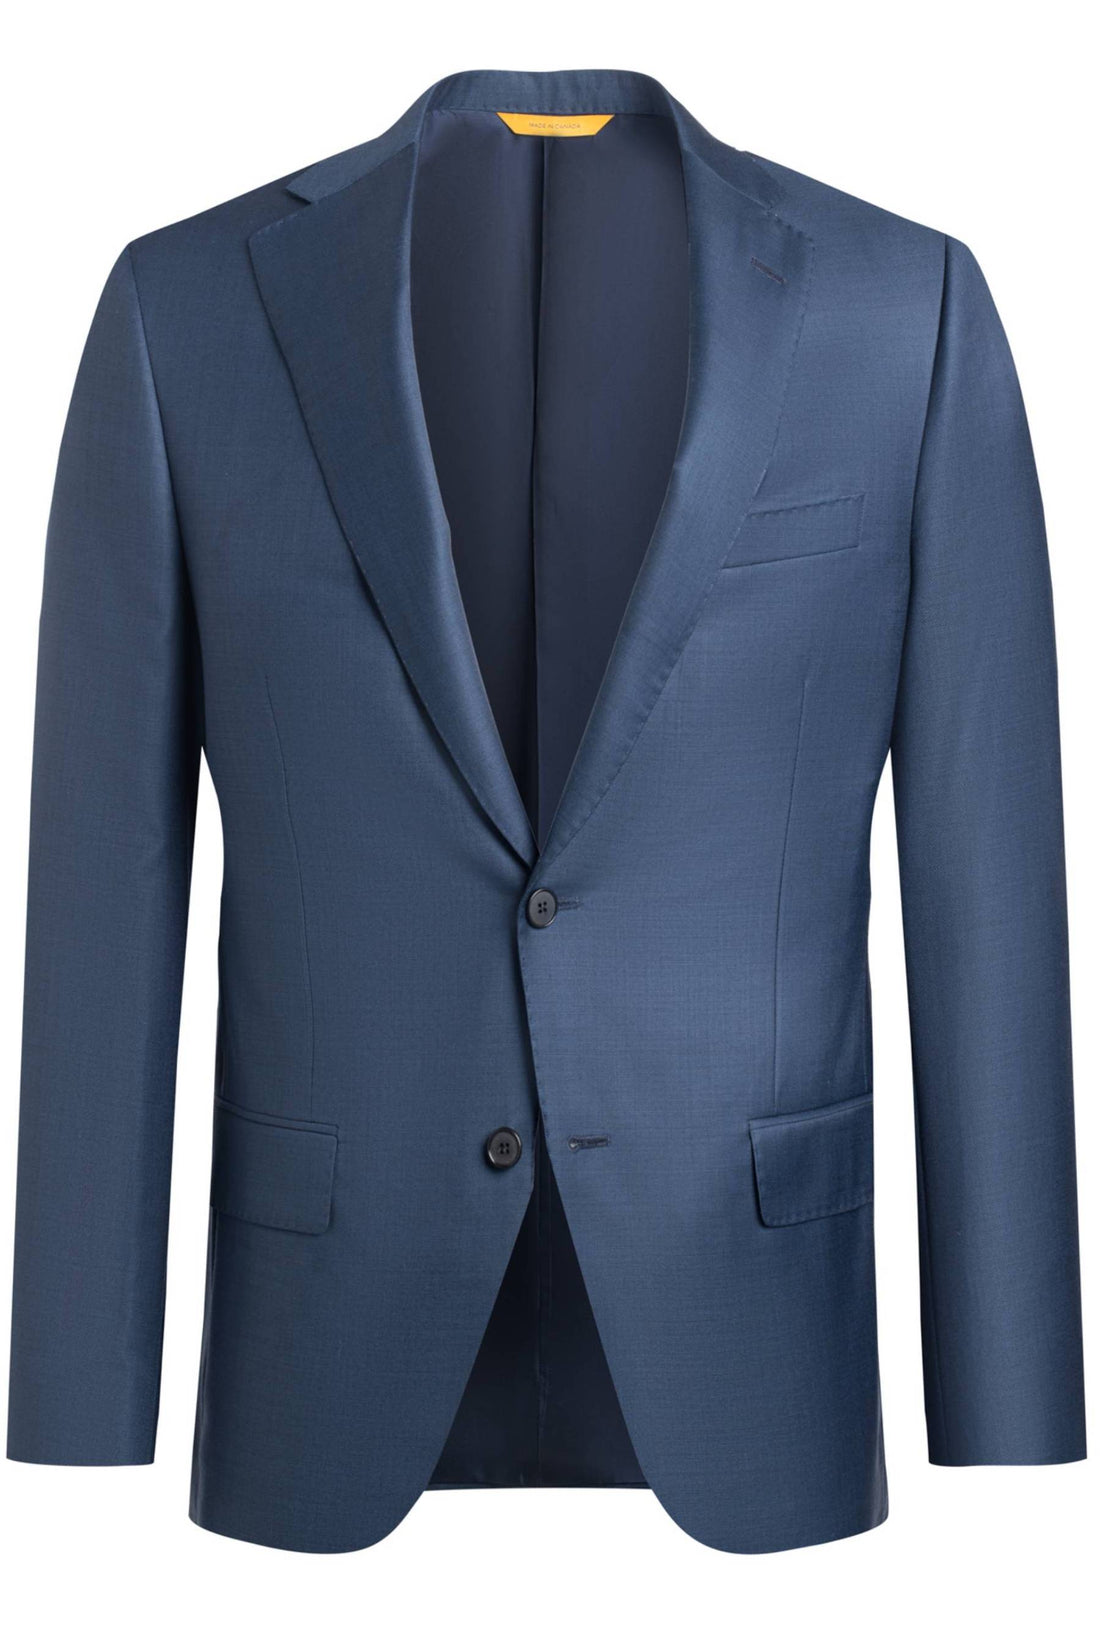 Heritage Gold Blue 110's Sharkskin Suit Front Jacket